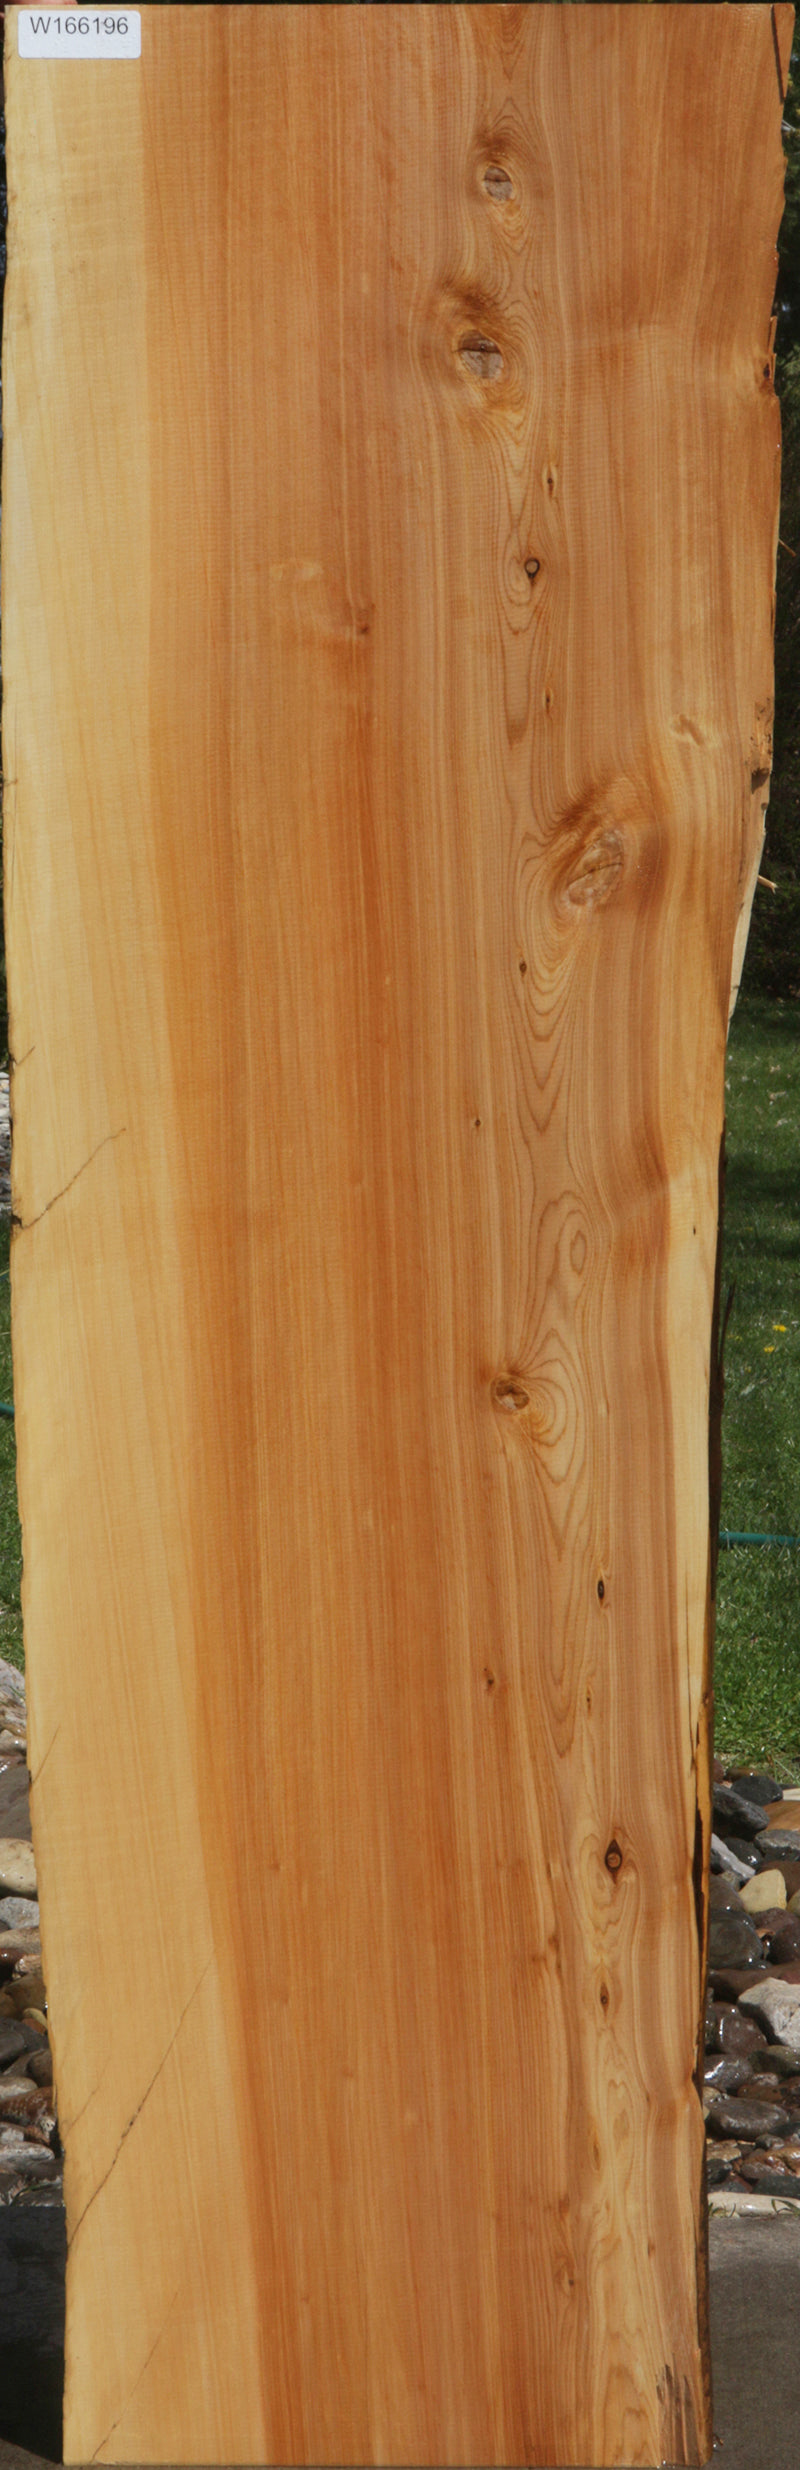 Rustic Juniper Lumber